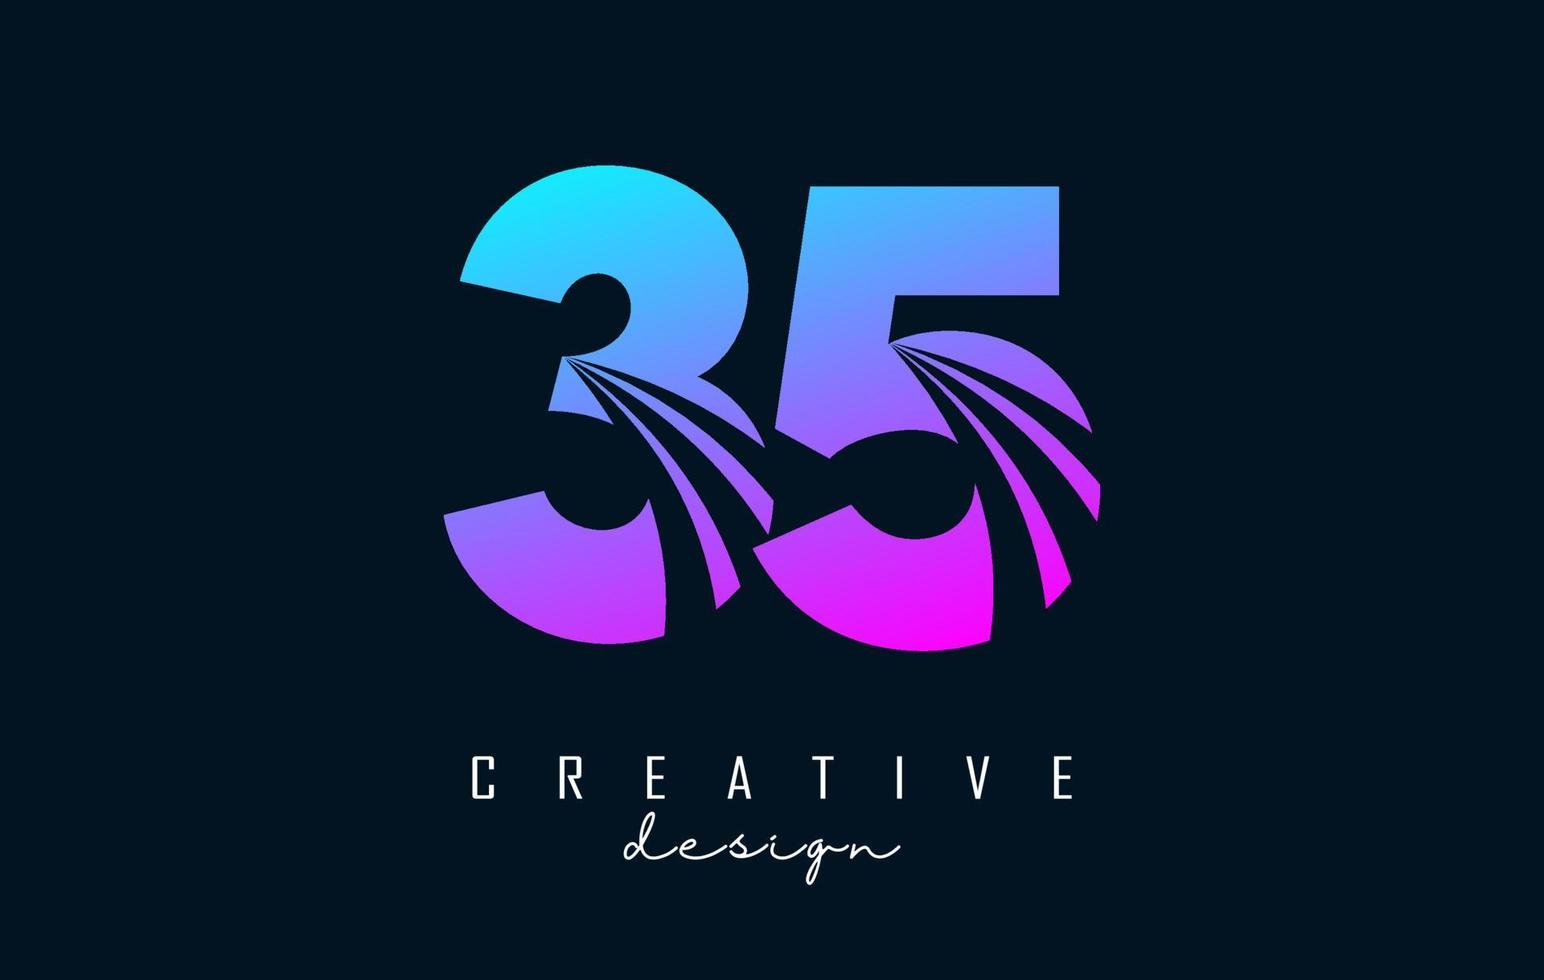 colorido logotipo creativo número 35 3 5 con líneas principales y diseño de concepto de carretera. número con diseño geométrico. vector